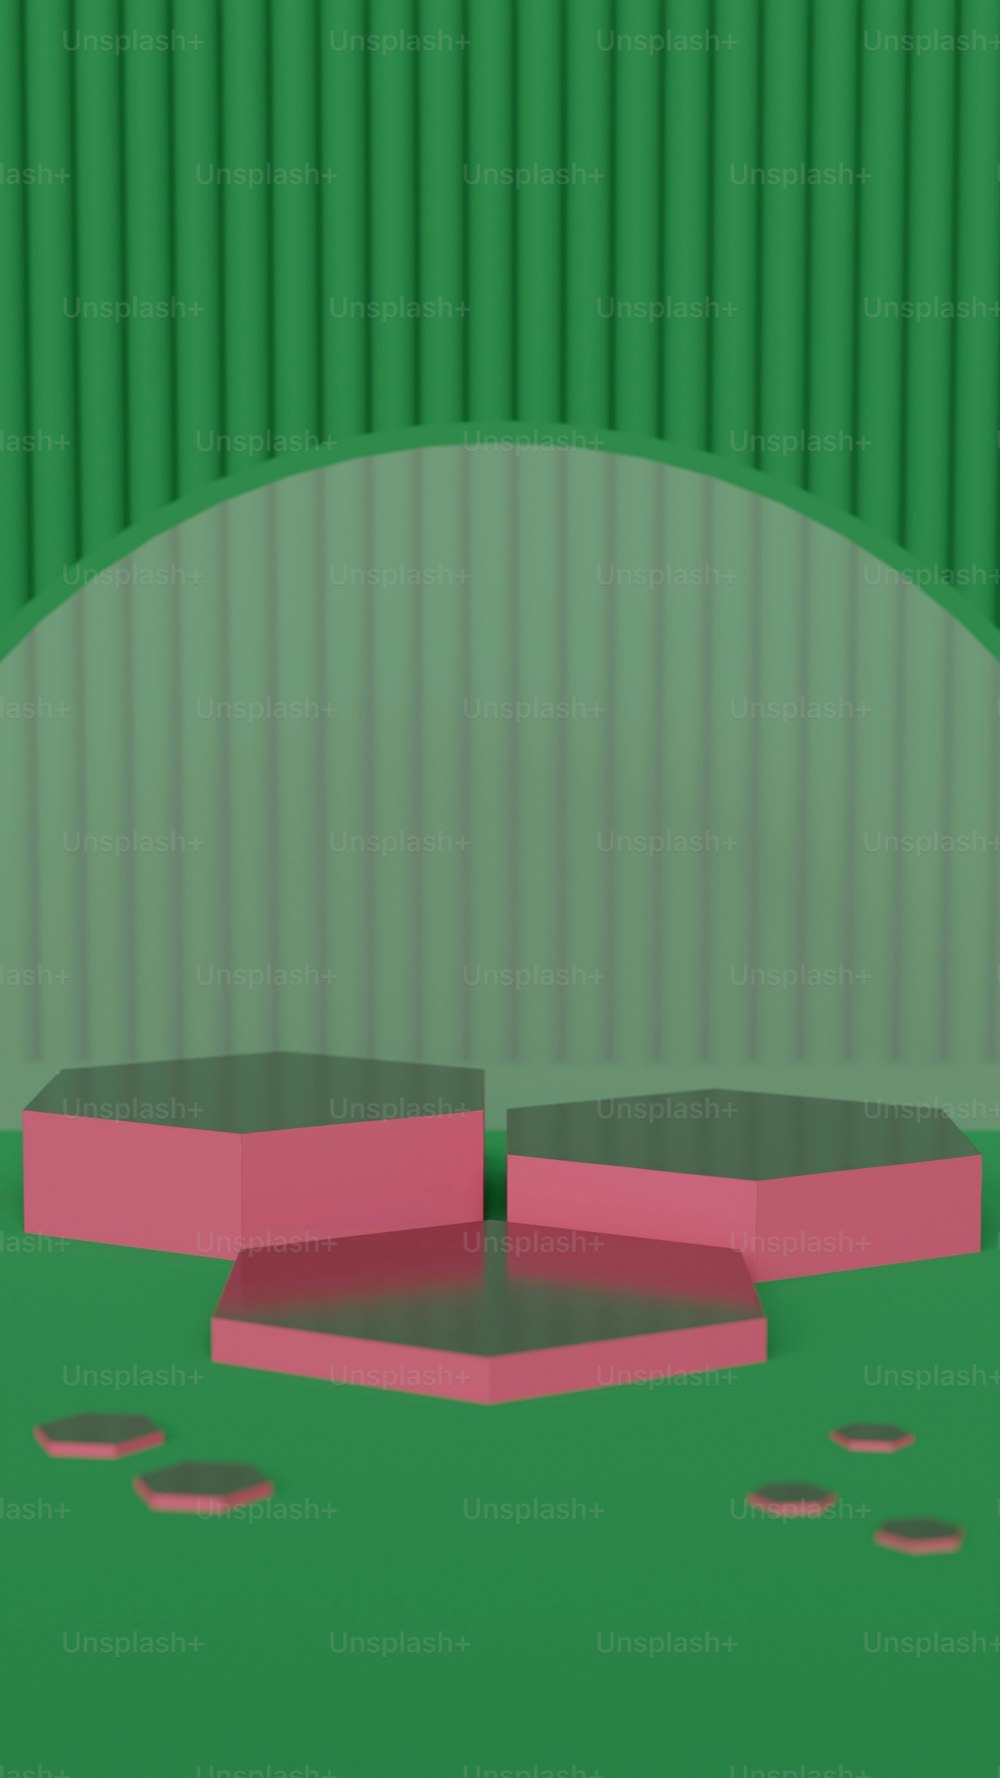 une image générée par ordinateur d’un objet rose